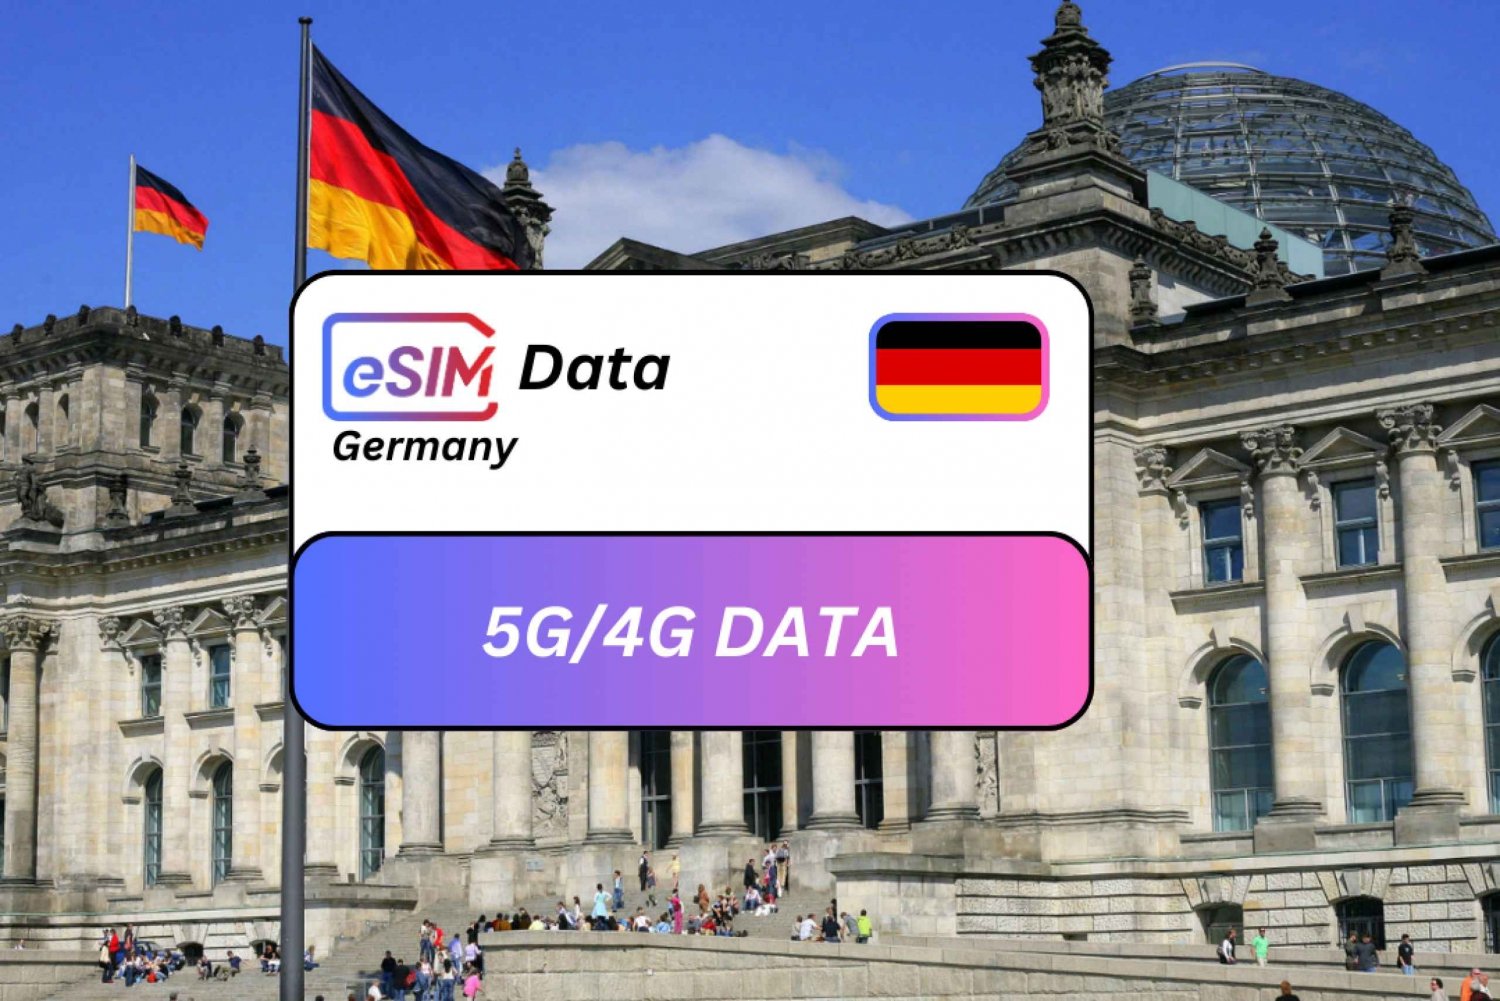 Munique: Plano de dados de roaming para turistas eSIM da Alemanha